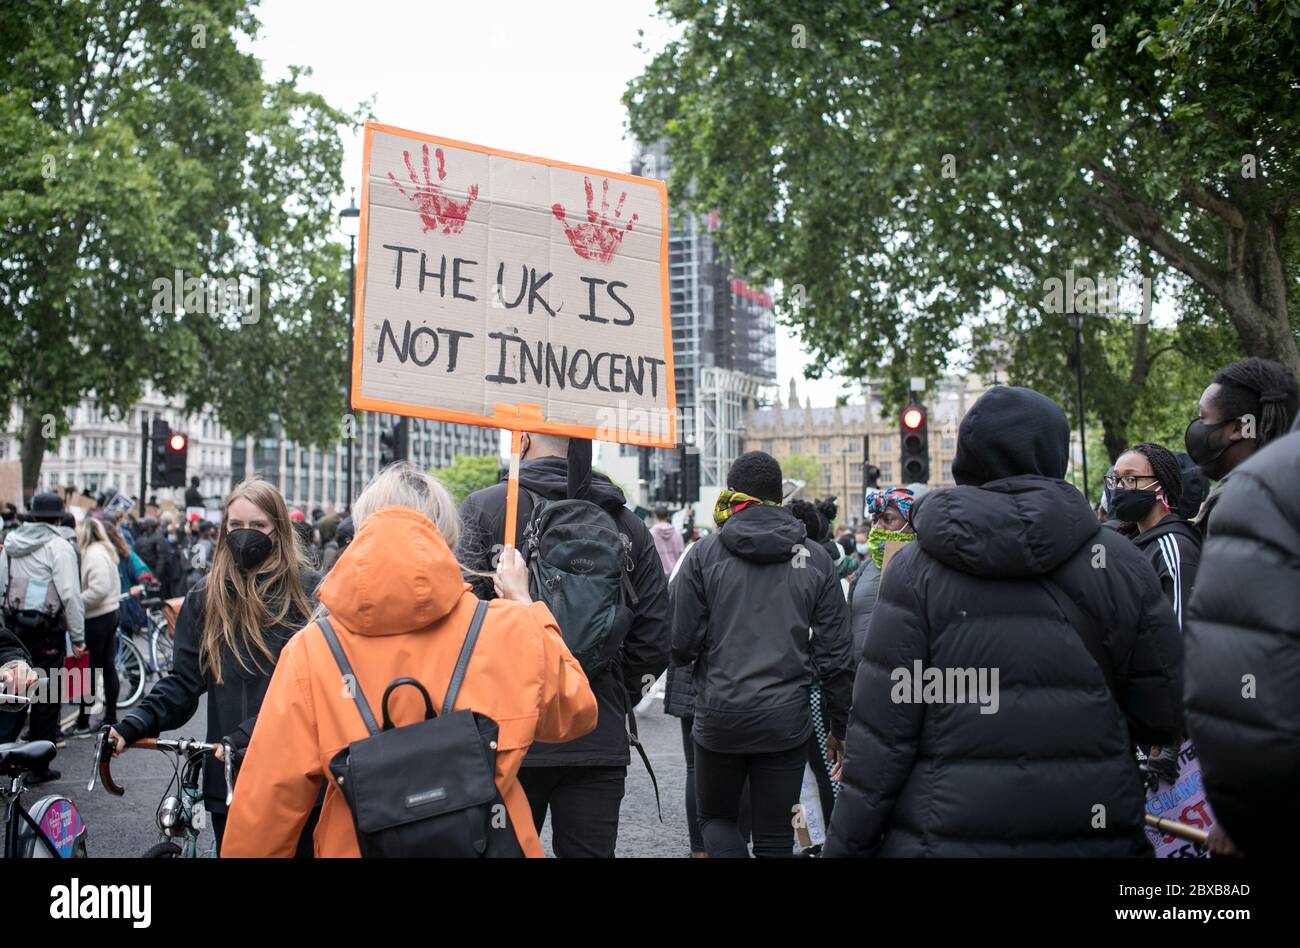 Un manifestant tient une pancarte contre le racisme systémique au Royaume-Uni se dirige vers le Parlement lors du rassemblement qui s'est tenu dans le centre de Londres, au Royaume-Uni. Banque D'Images